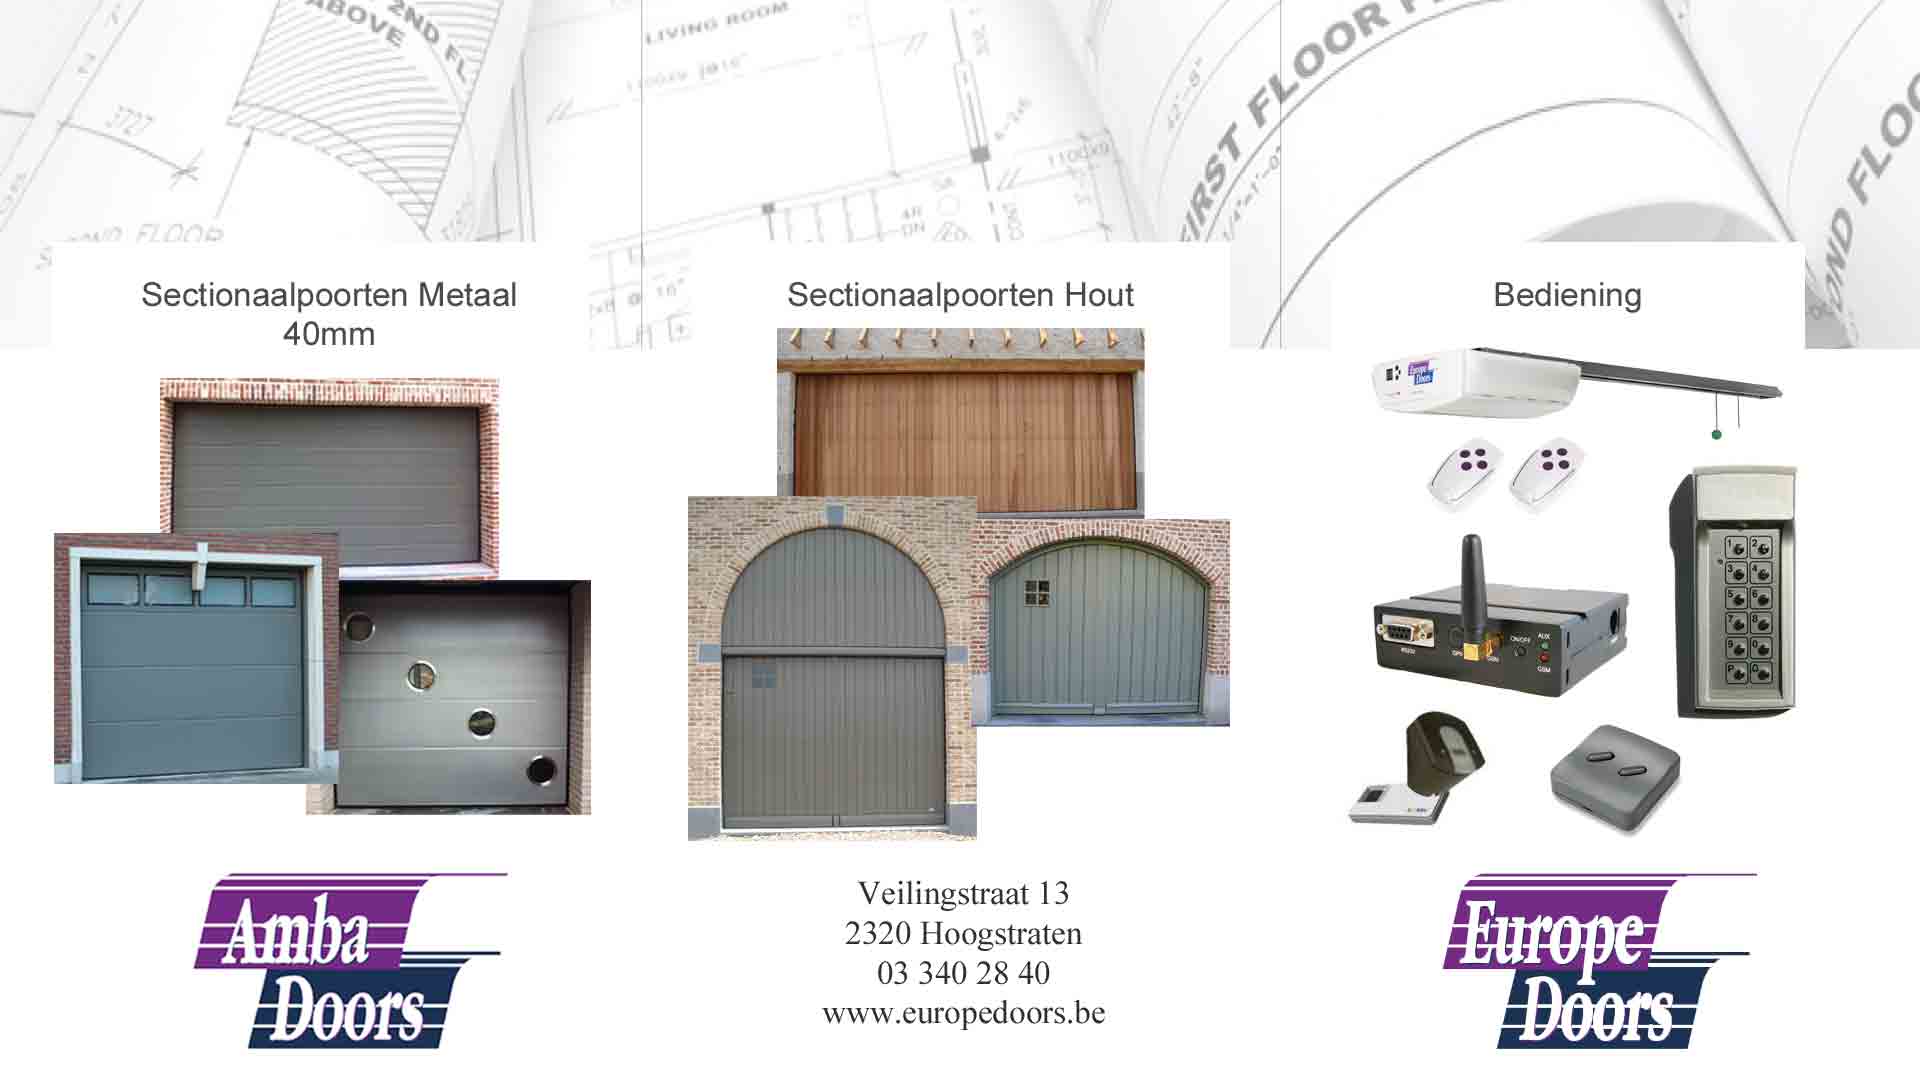 garagepoortinstallateurs Schilde Europe Doors NV - Amba Doors NV